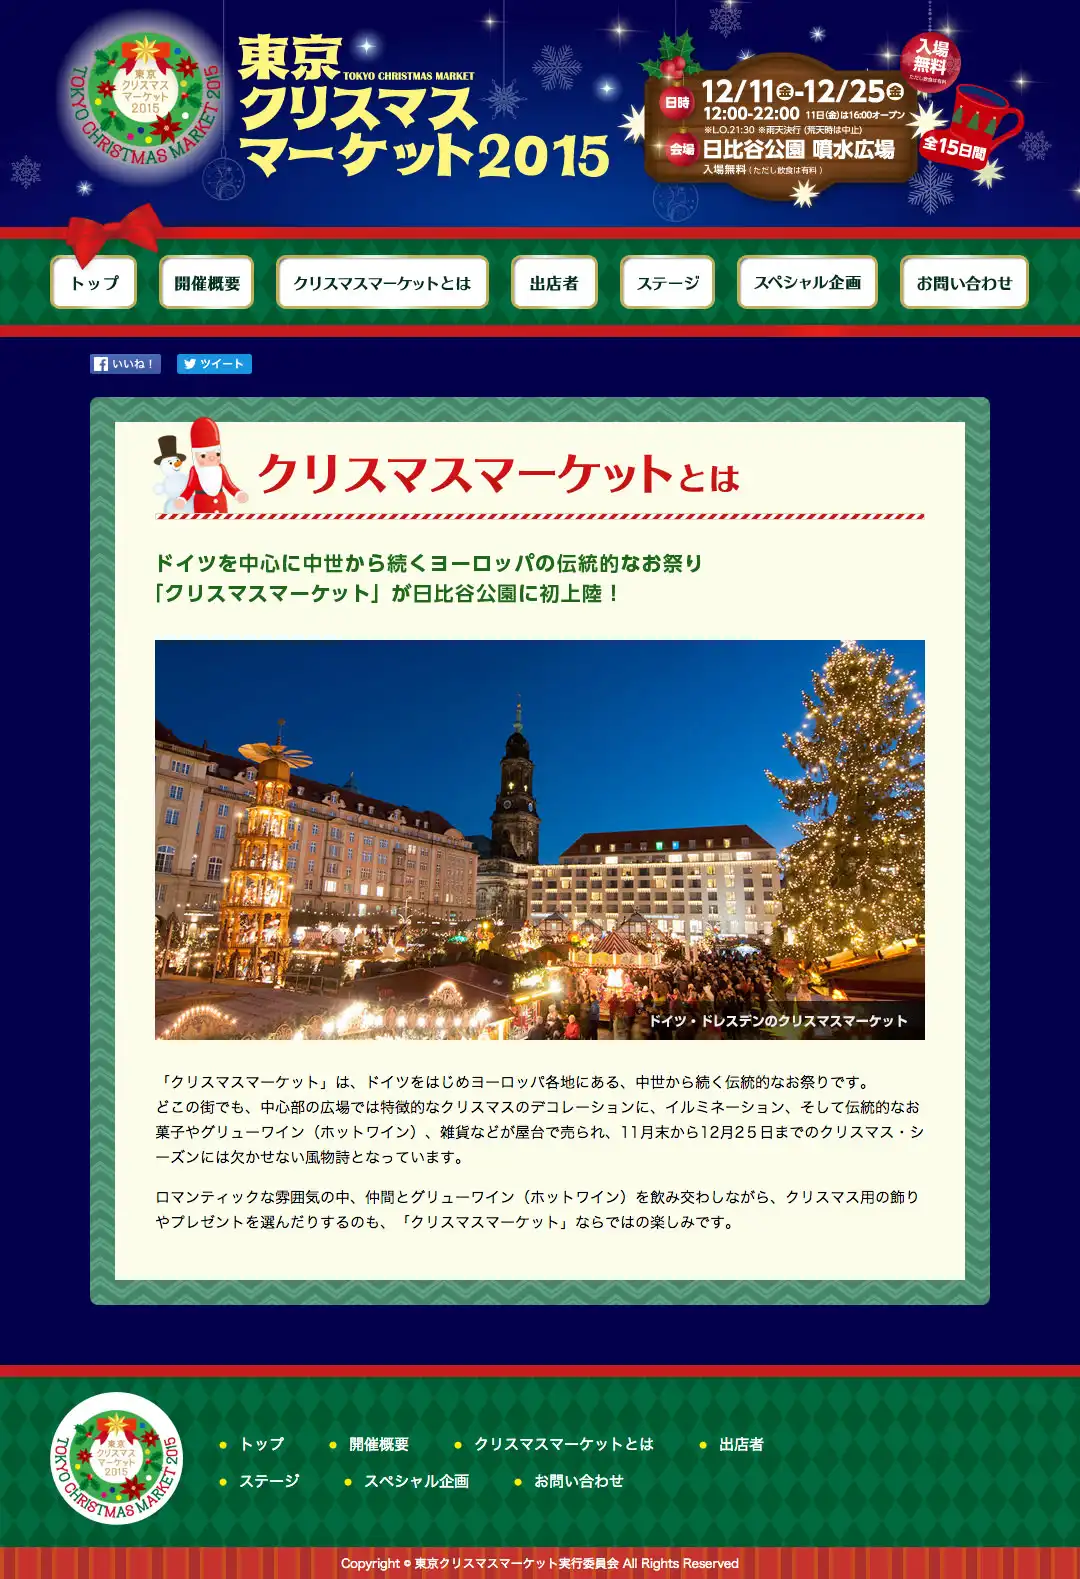 東京クリスマスマーケット2015 イベントサイト